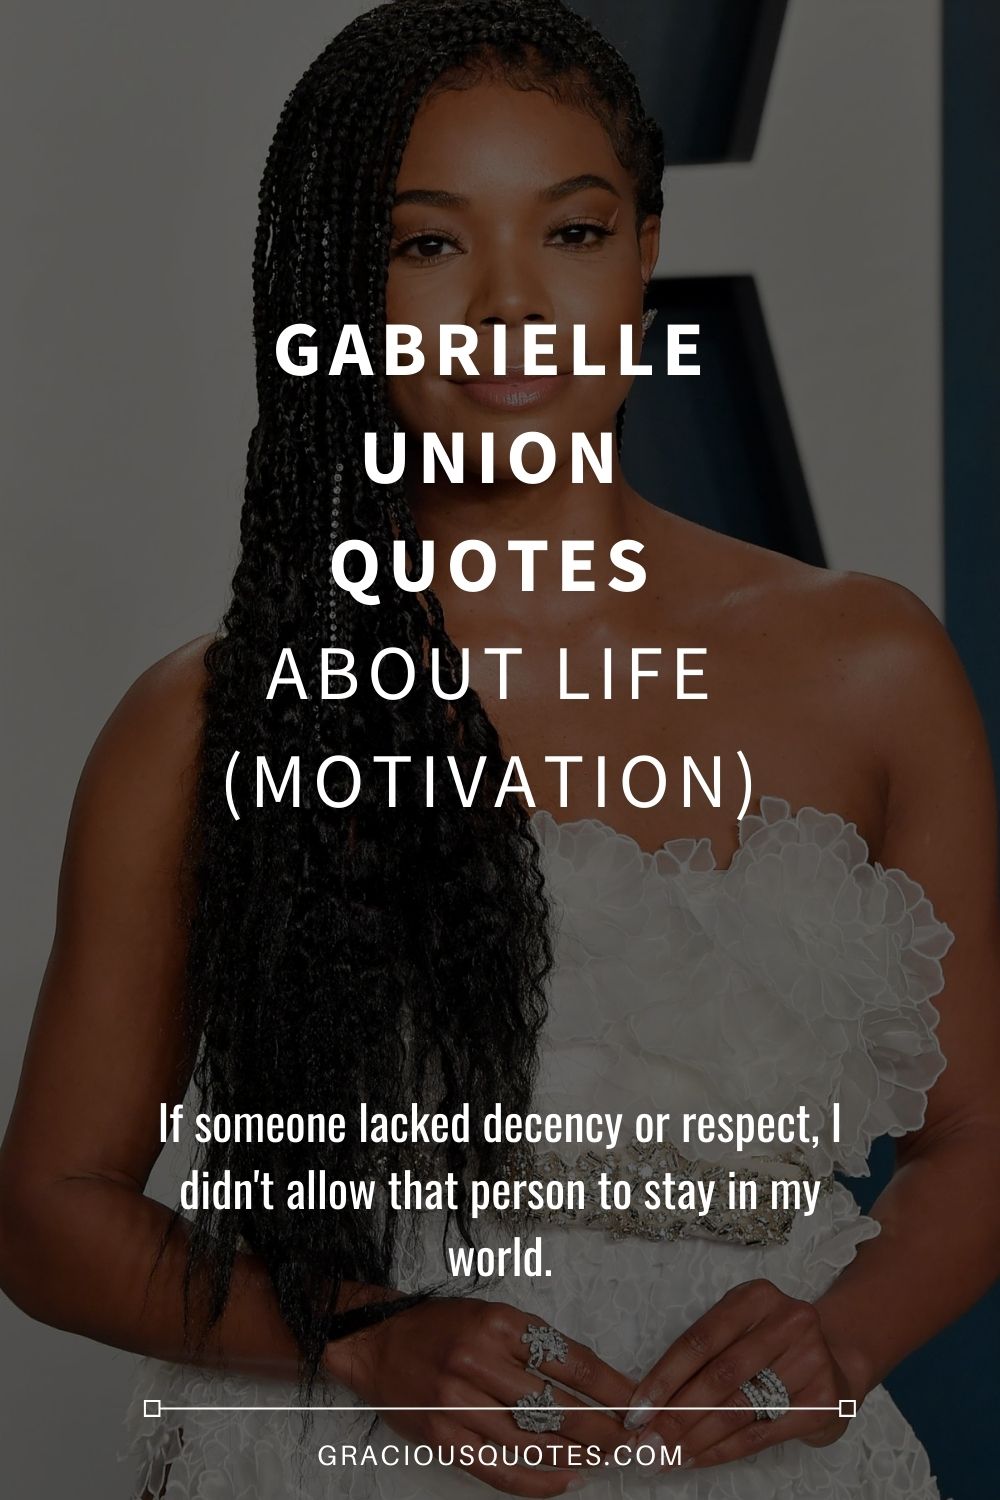 Gabrielle Union Quotes About Life (MOTIVATION) - Gracious Quotes